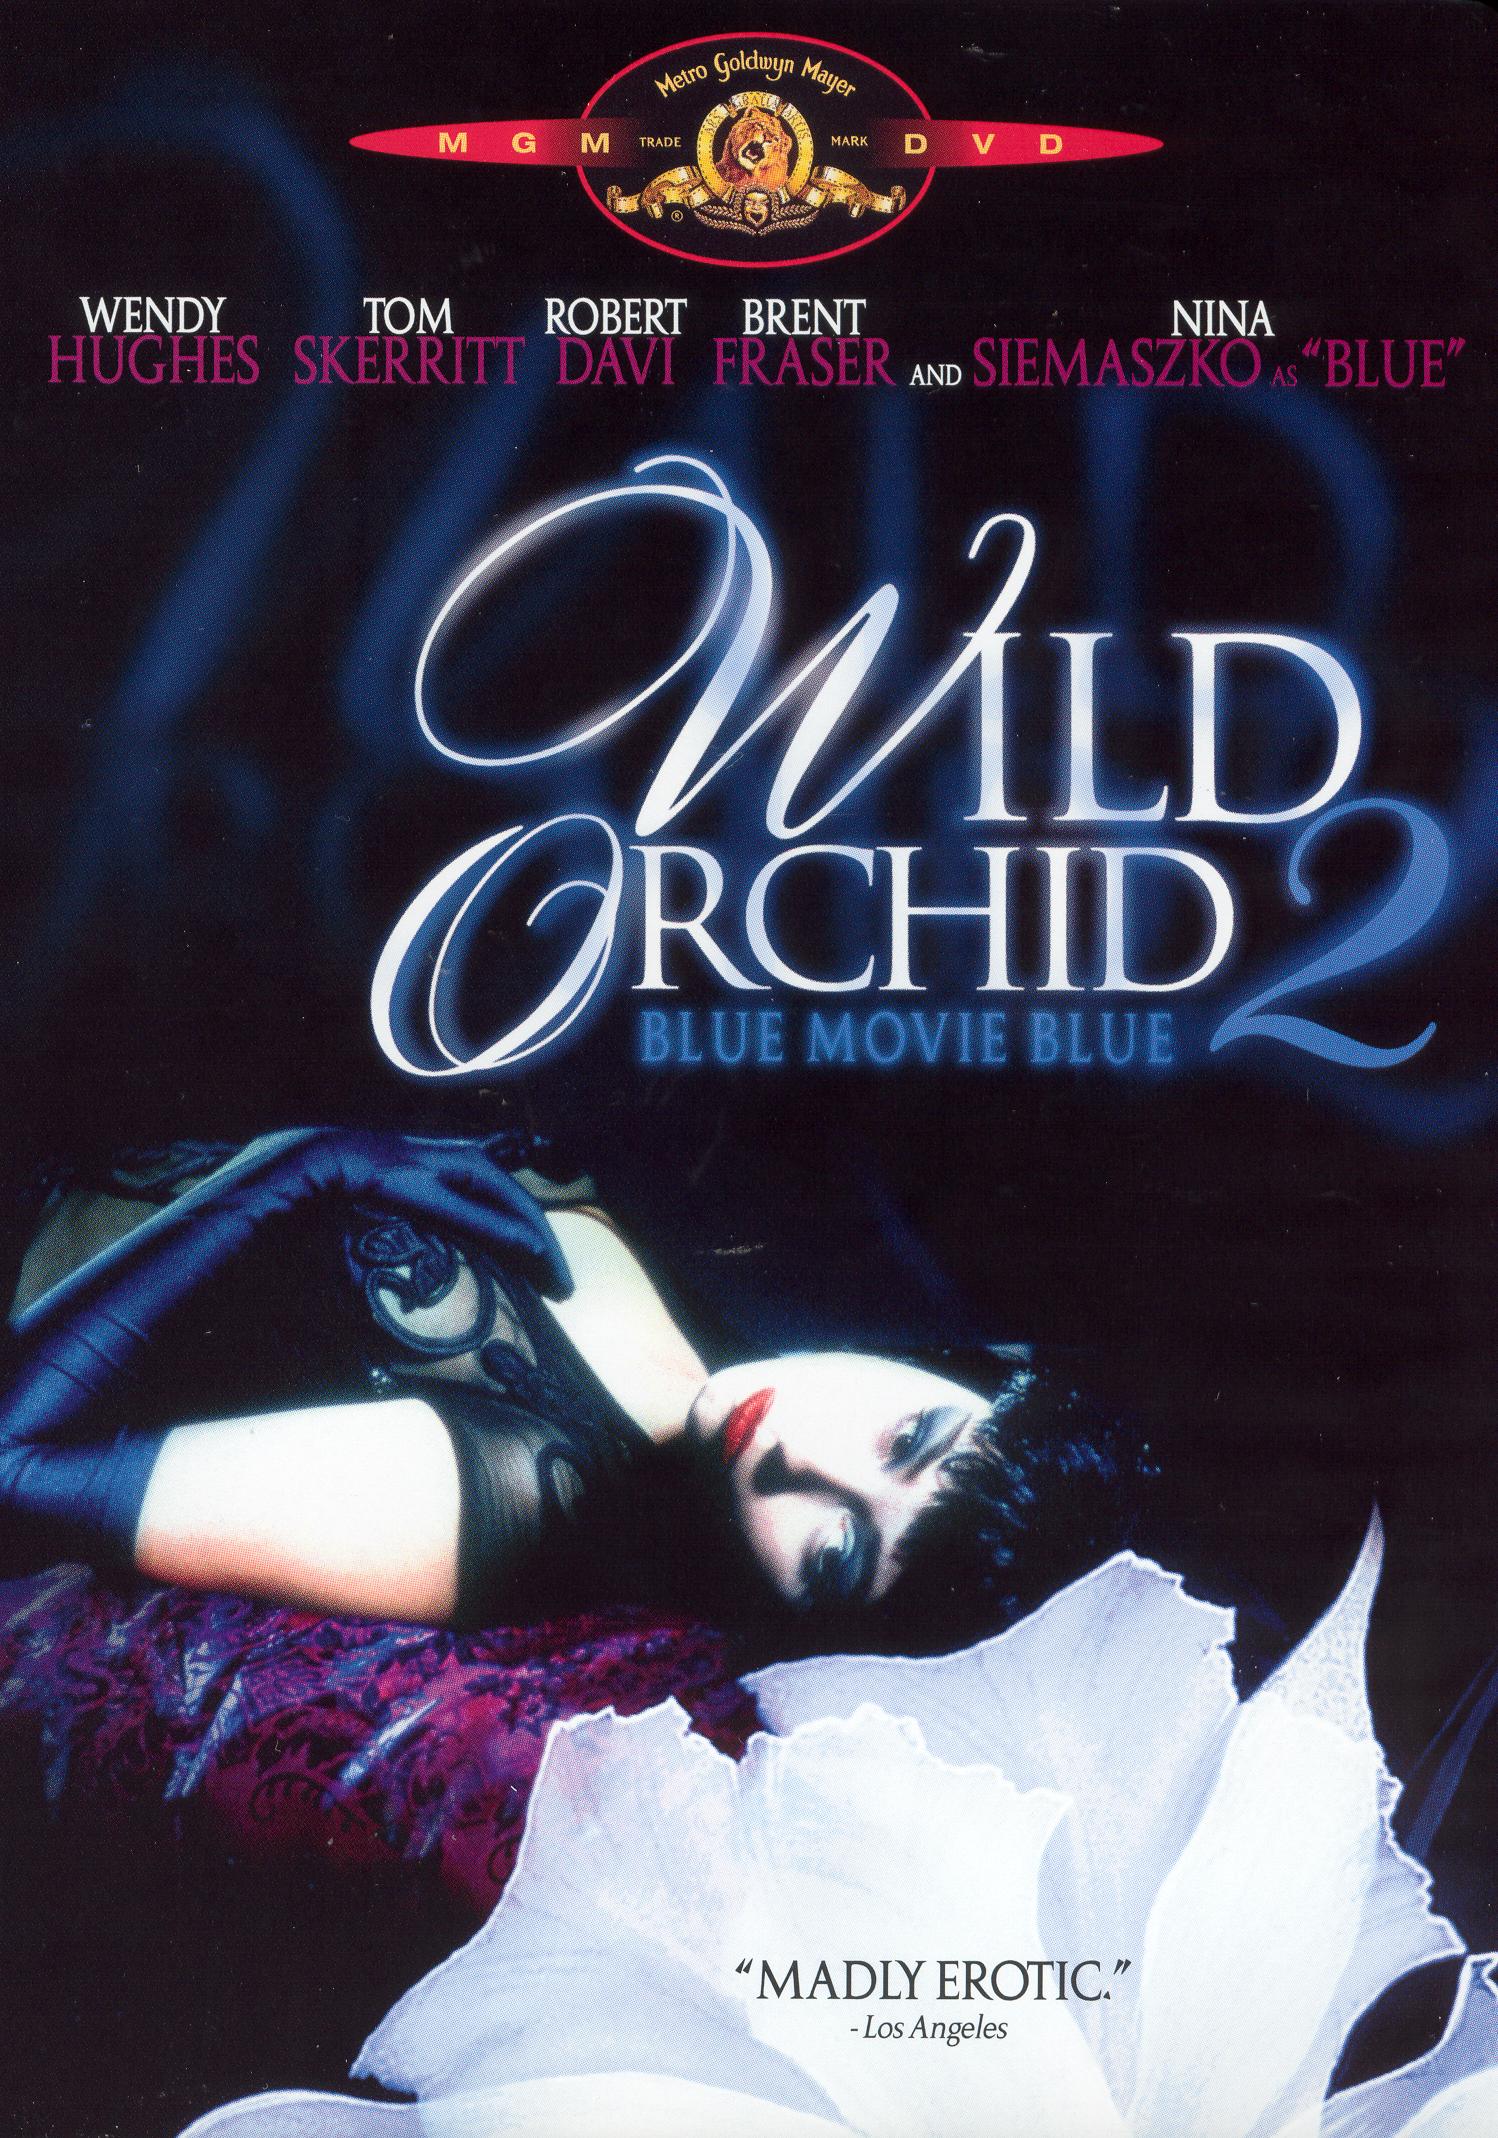 Blue movie erotic